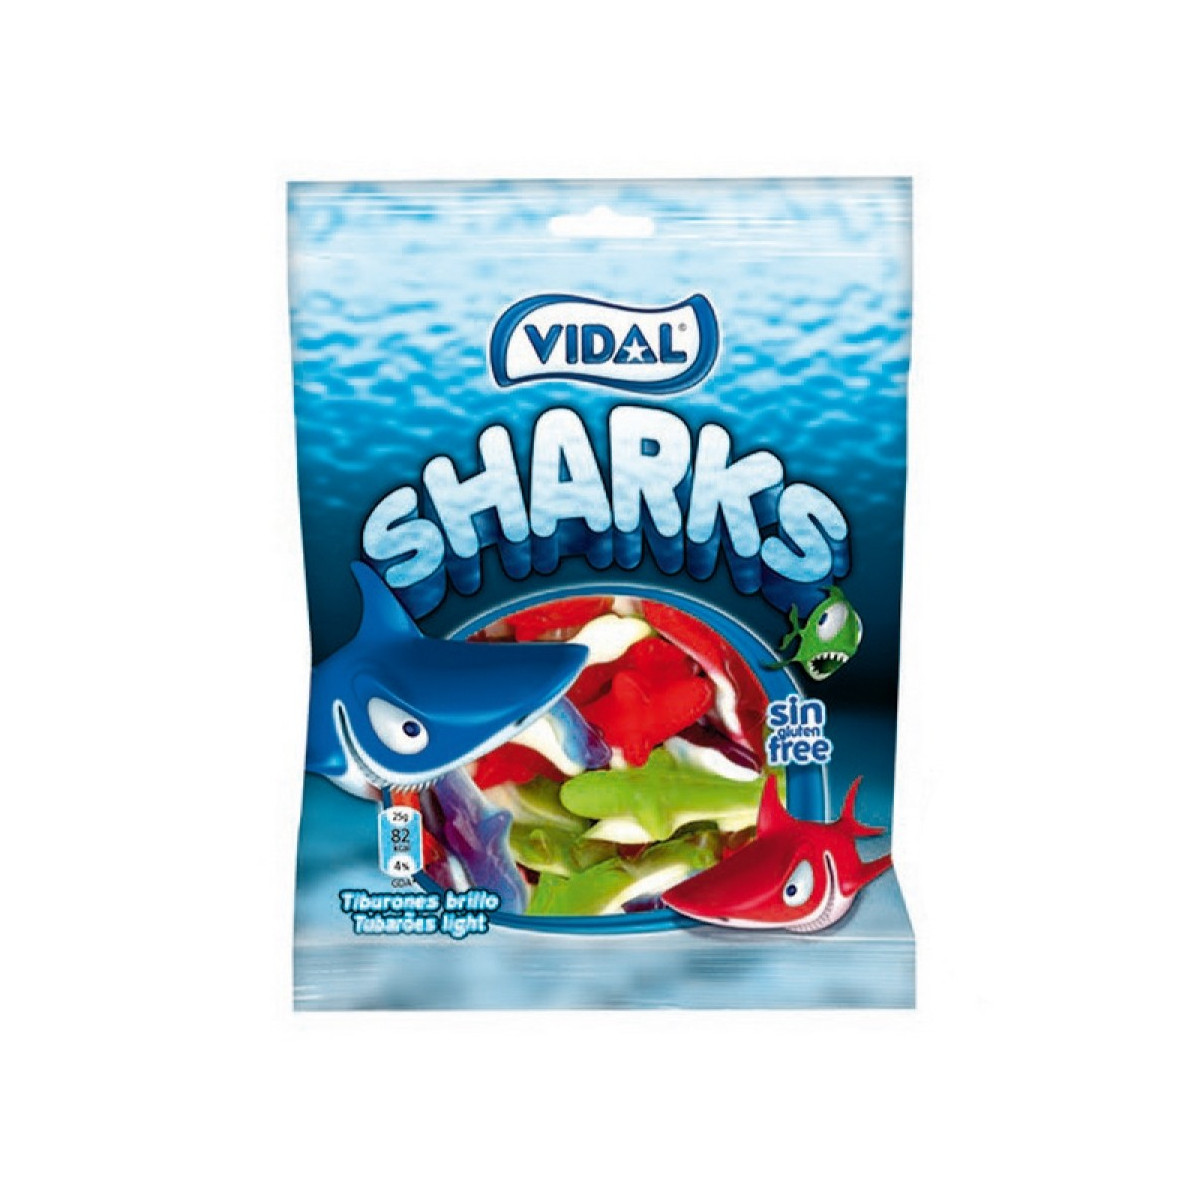 Shakes com formas de tubarão